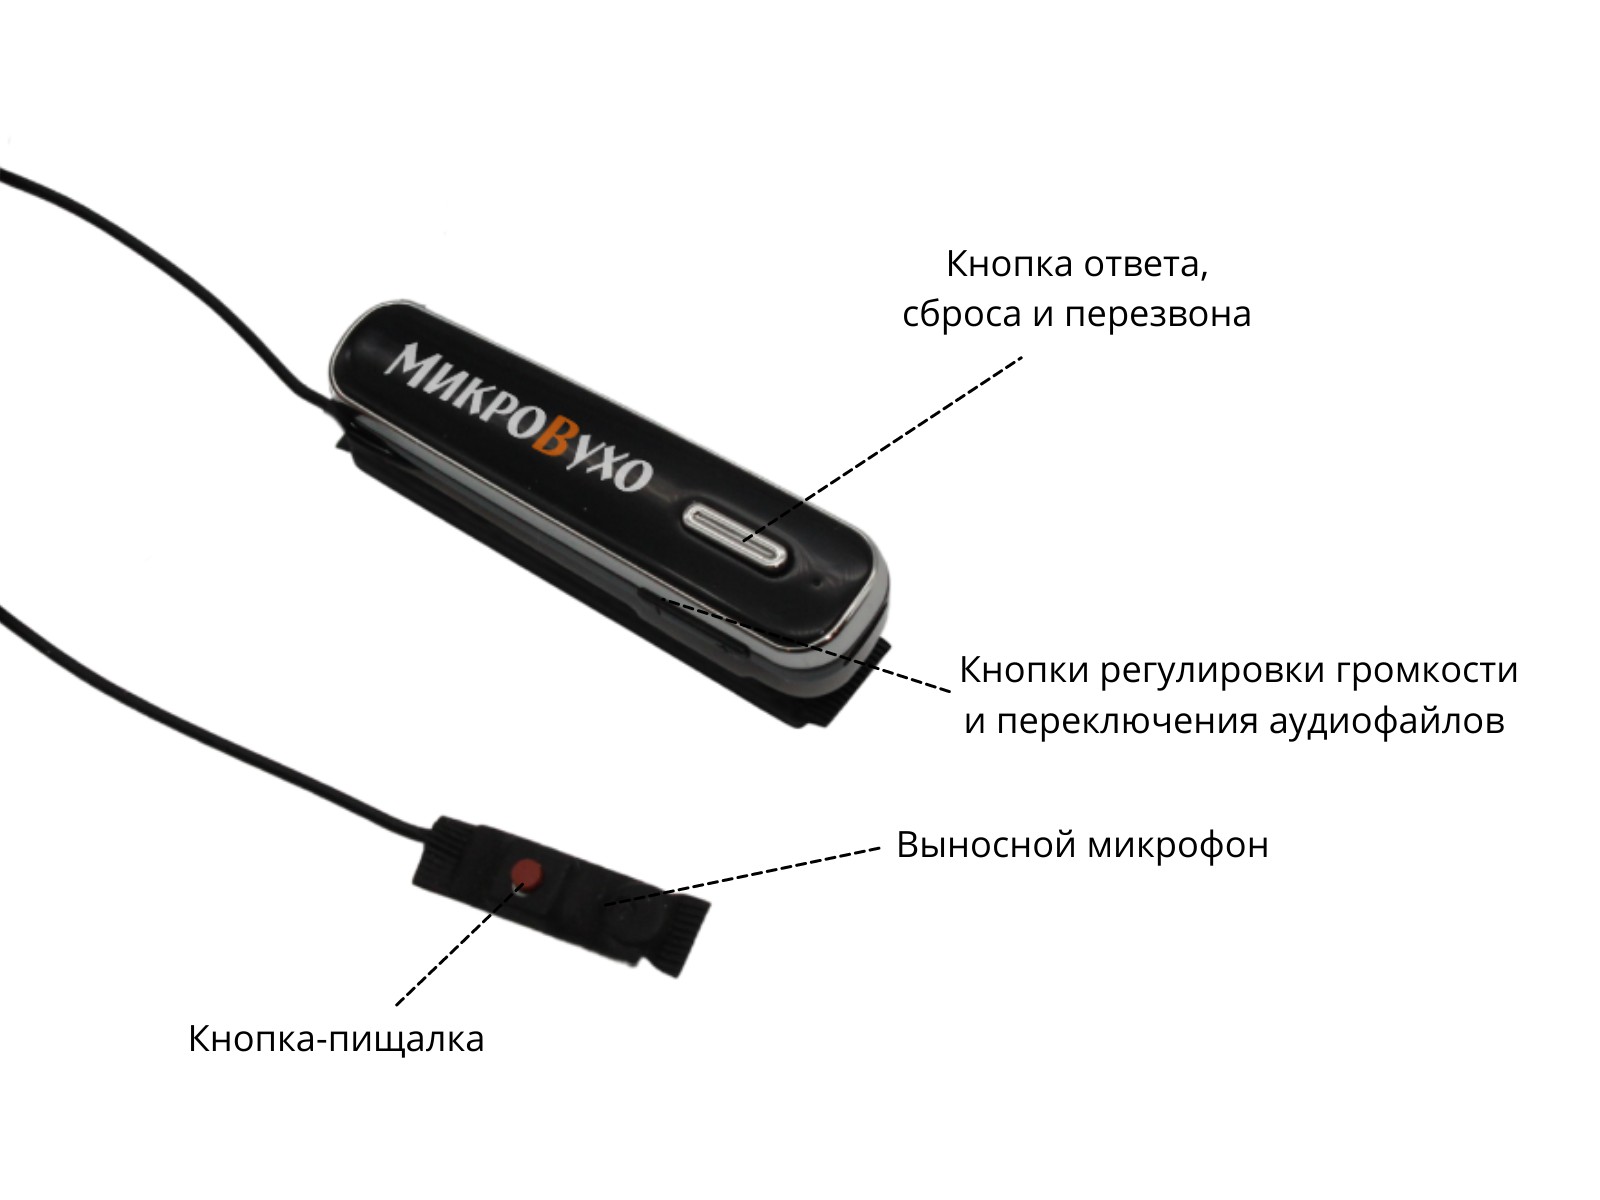 Универсальная гарнитура Bluetooth Box Premier Lite Plus с капсулой K5 4 мм и магнитами 2 мм - изображение 7